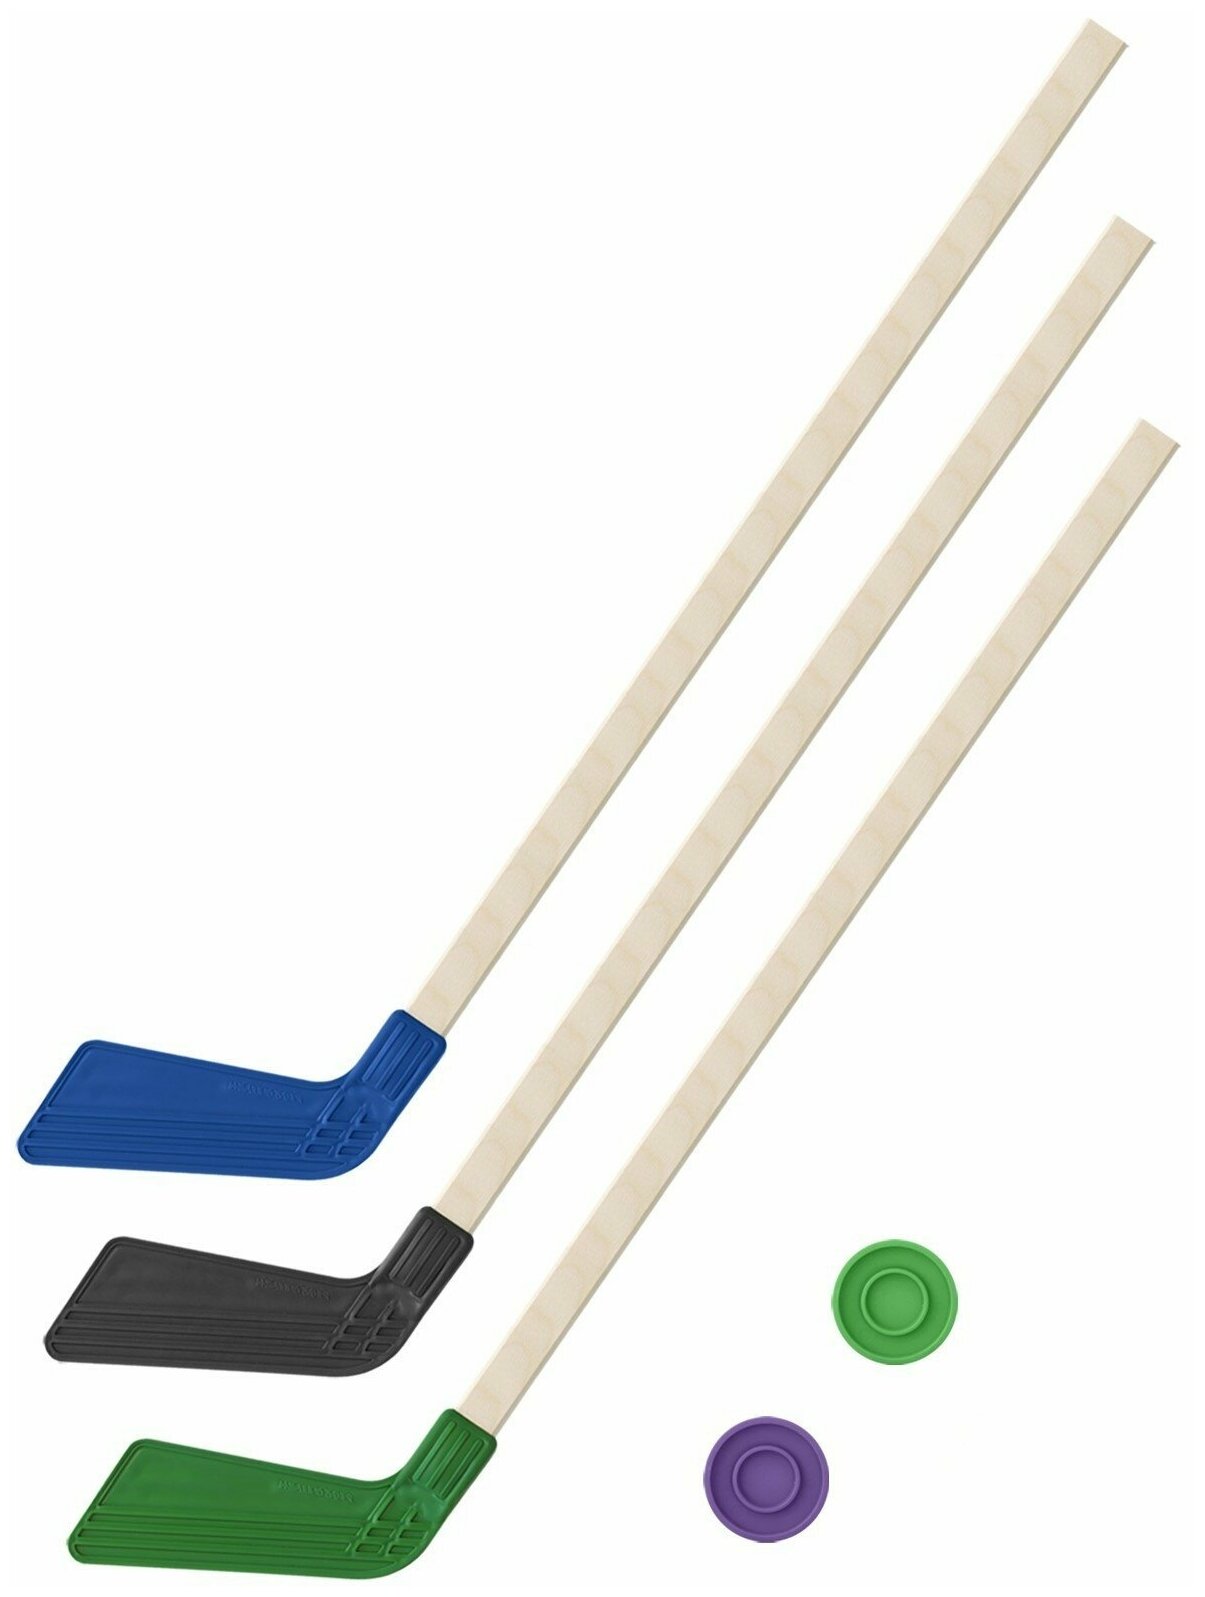 Детский хоккейный набор для игр на улице, свежем воздухе Клюшка детская хоккейная - 3 Клюшки 80 см. (синяя, черная, зеленая) + 2 шайбы